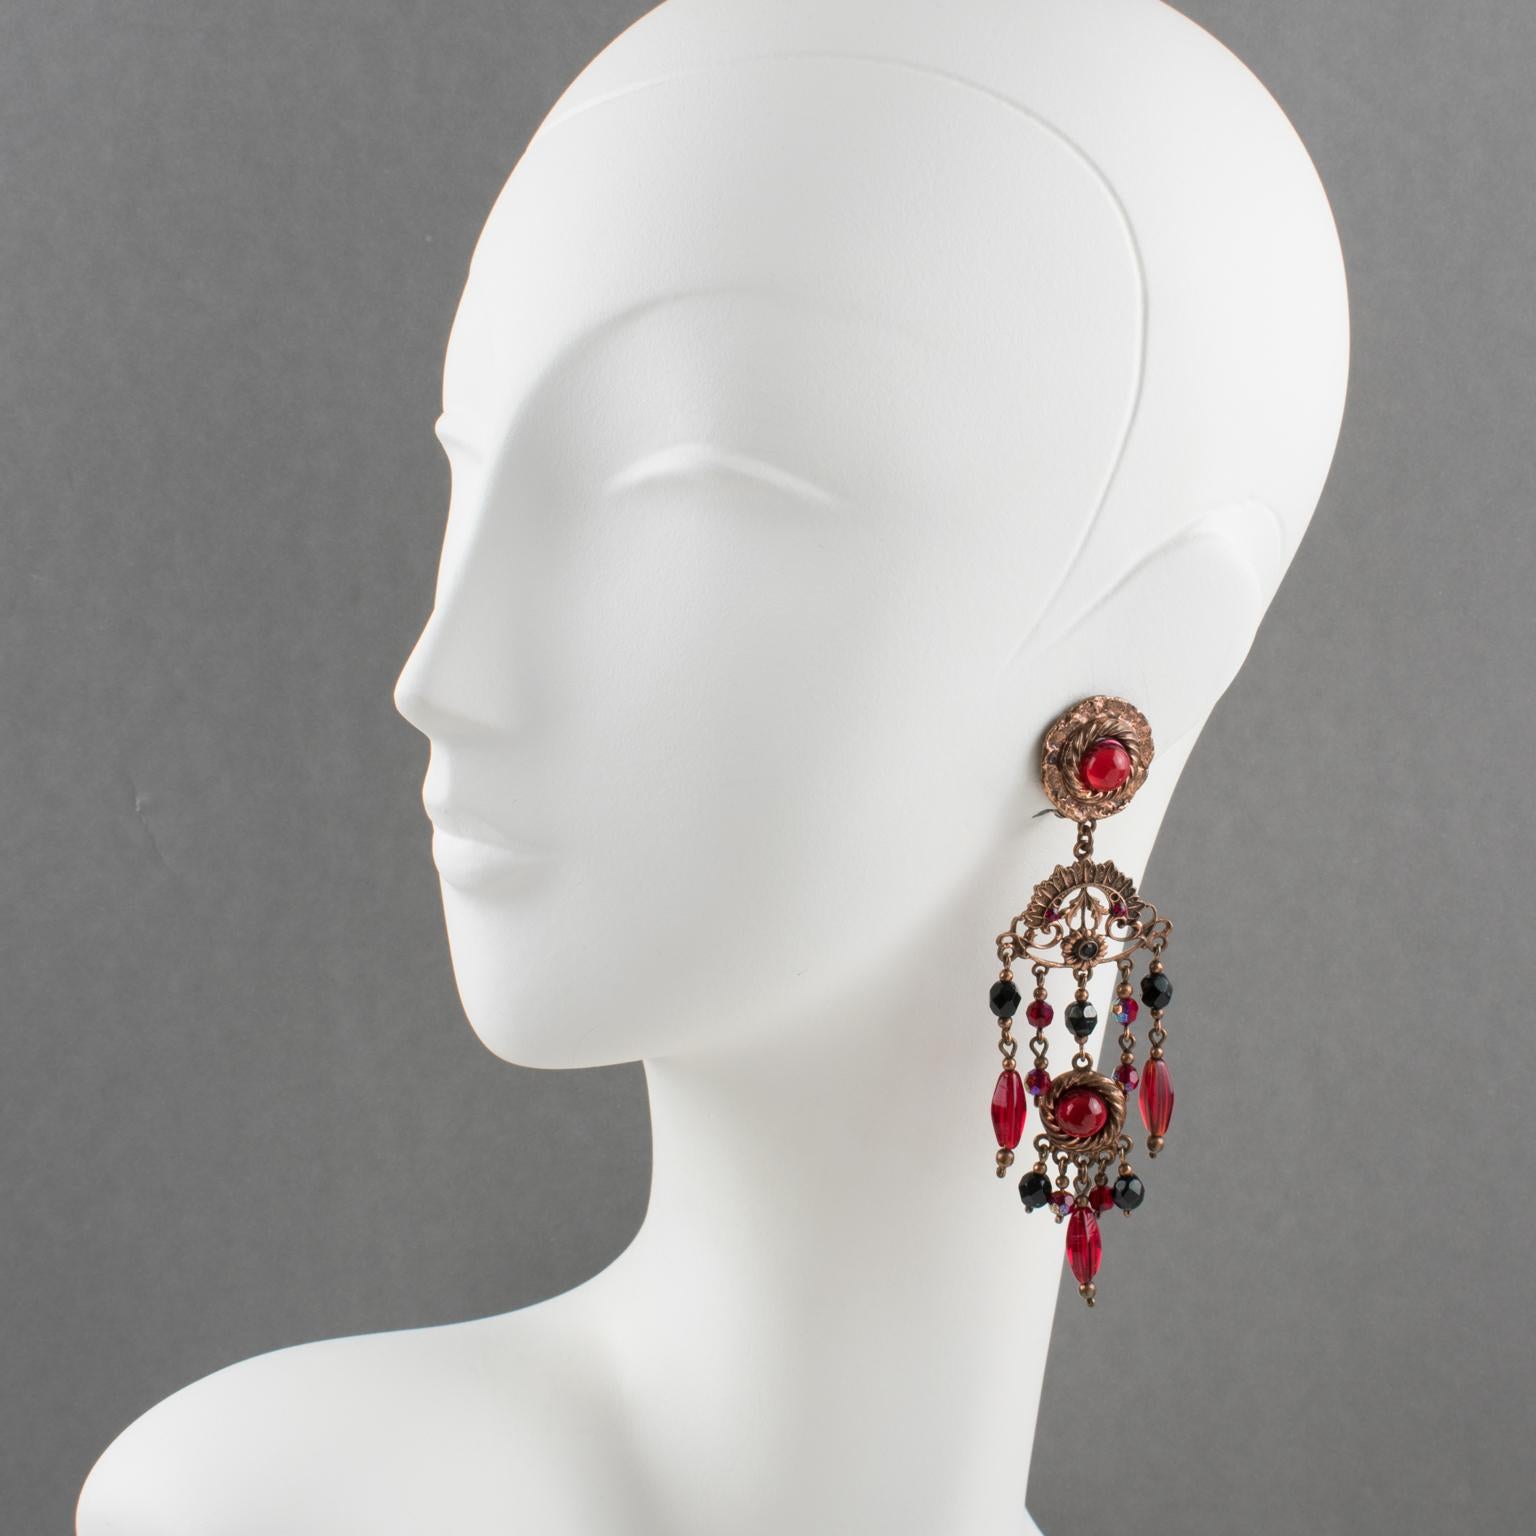 Diese fabelhaften Barock-Ohrringe des französischen Schmuckdesigners Henry Perichon (alias Henry) sind aus kupferfarbenem Metall gefertigt und baumeln in einem viktorianisch inspirierten Design, das mit roten und schwarzen facettierten